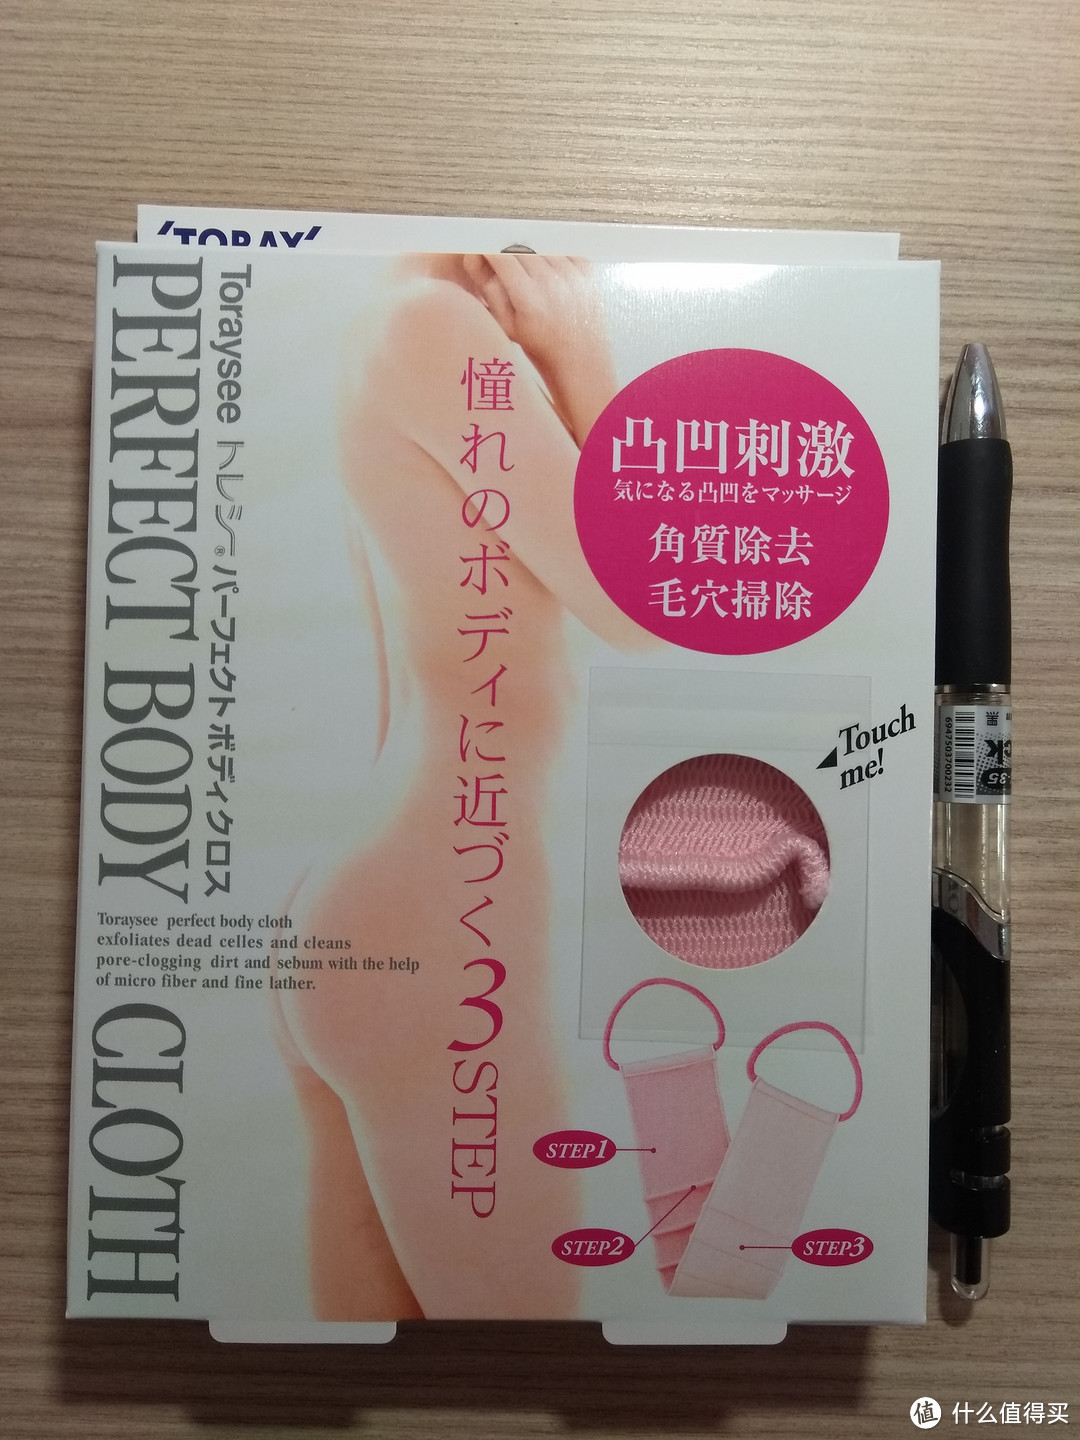 净肤的艺术——日本东丽净颜护肤套装测评